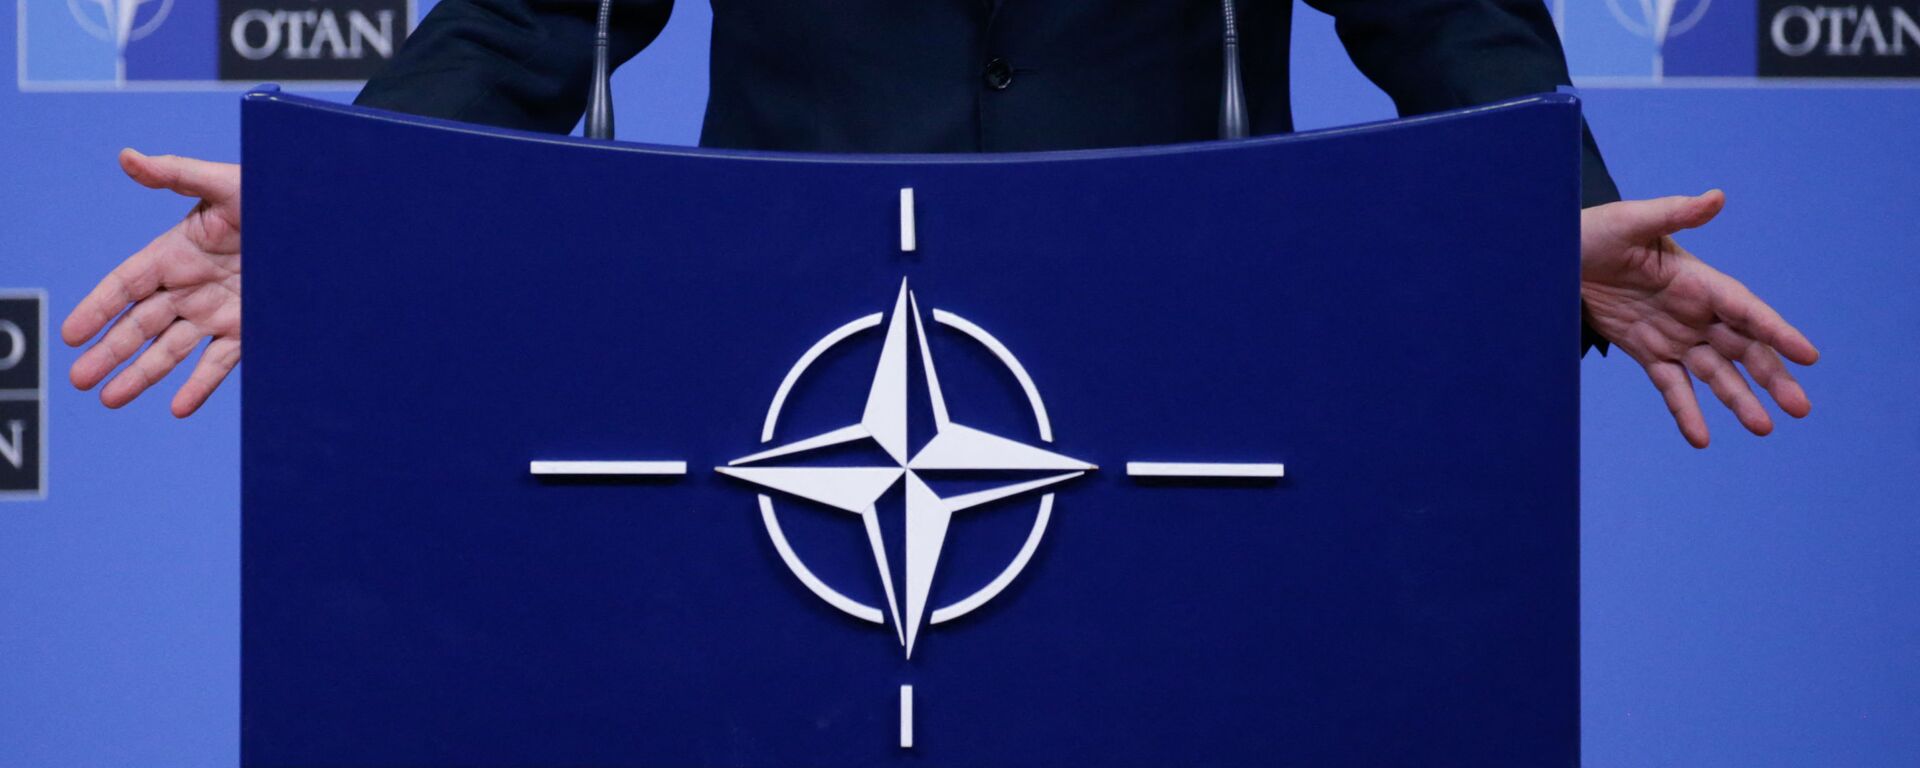 На фотографии изображен логотип НАТО, когда Генеральный секретарь НАТО Йенс Столтенберг проводит пресс-конференцию во время встречи министров обороны НАТО в Брюсселе 13 февраля 2020 г - Sputnik Абхазия, 1920, 18.03.2021